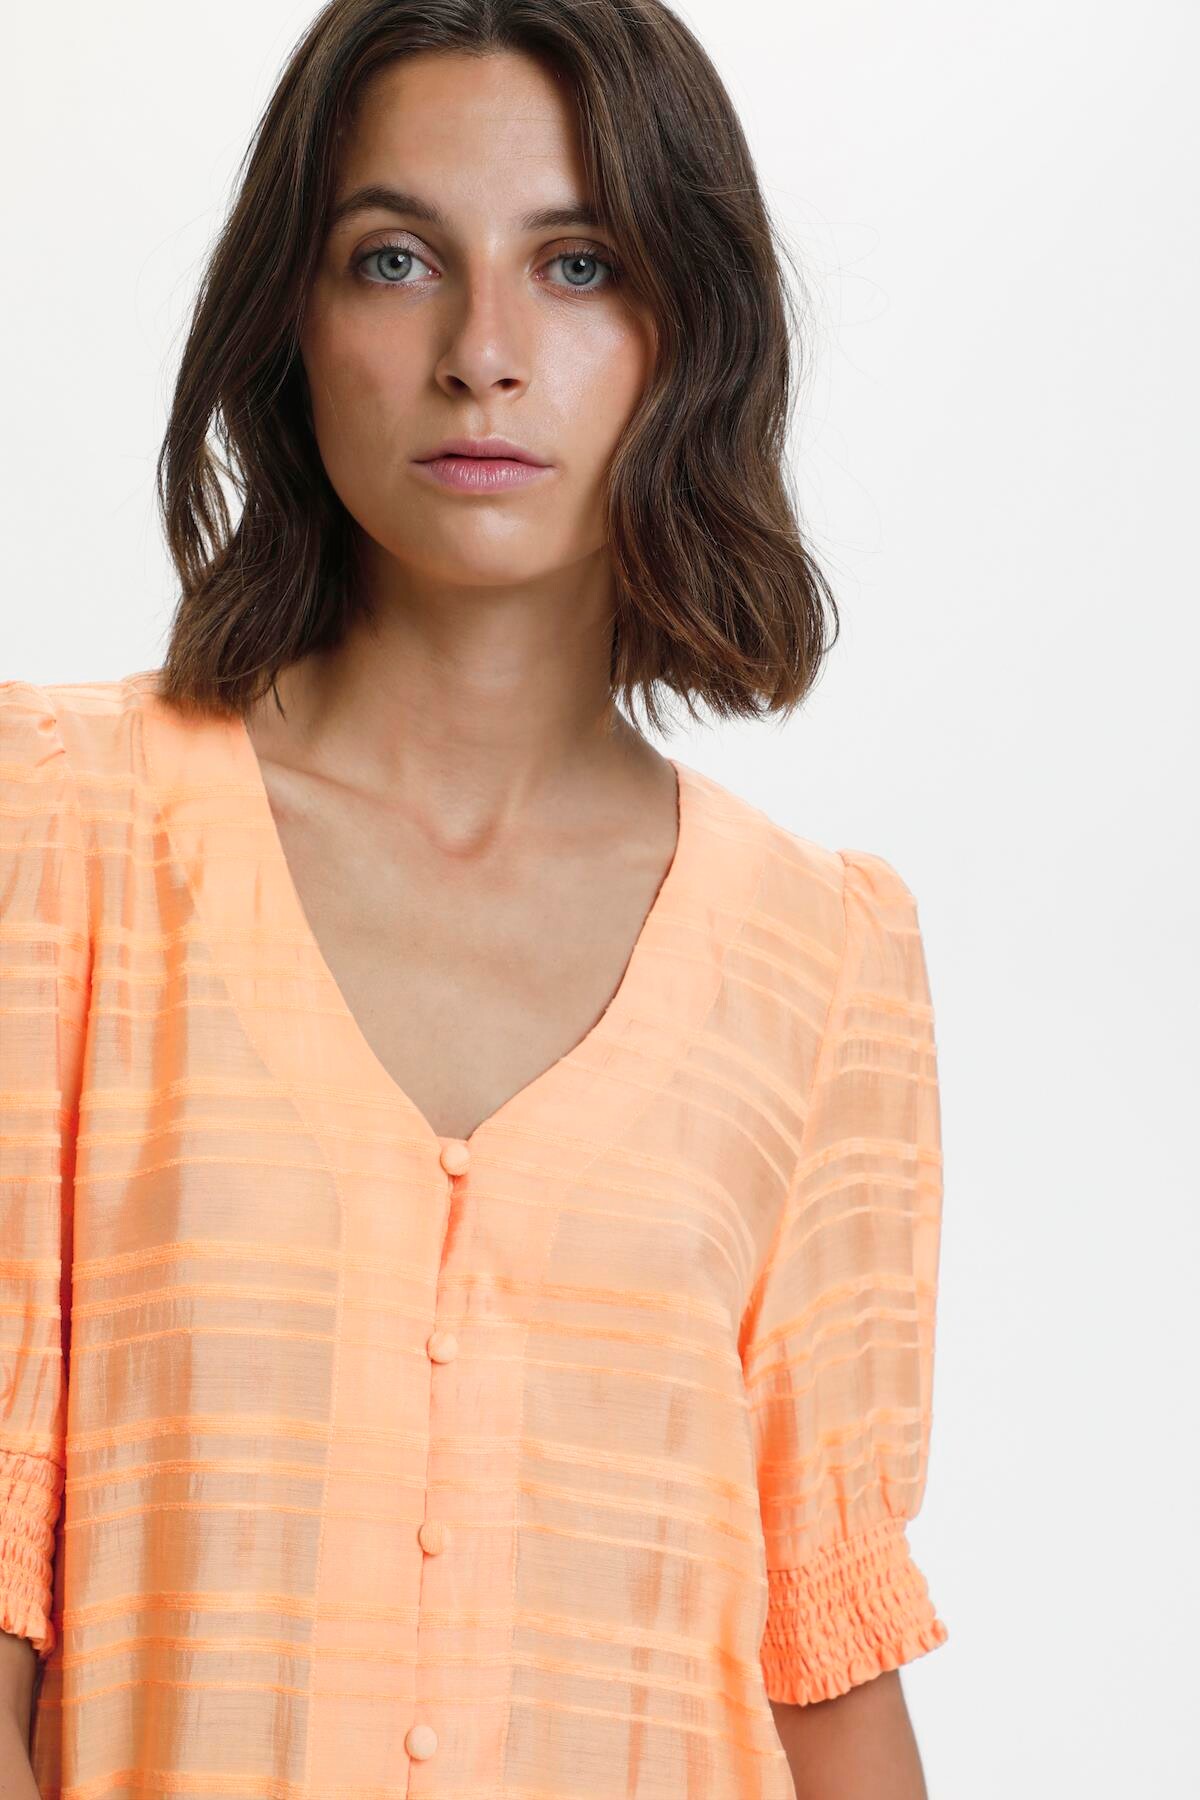 Karen By Simonsen Cesskb Skjorte, Farve: Gul Orange, Størrelse: 38, Dame